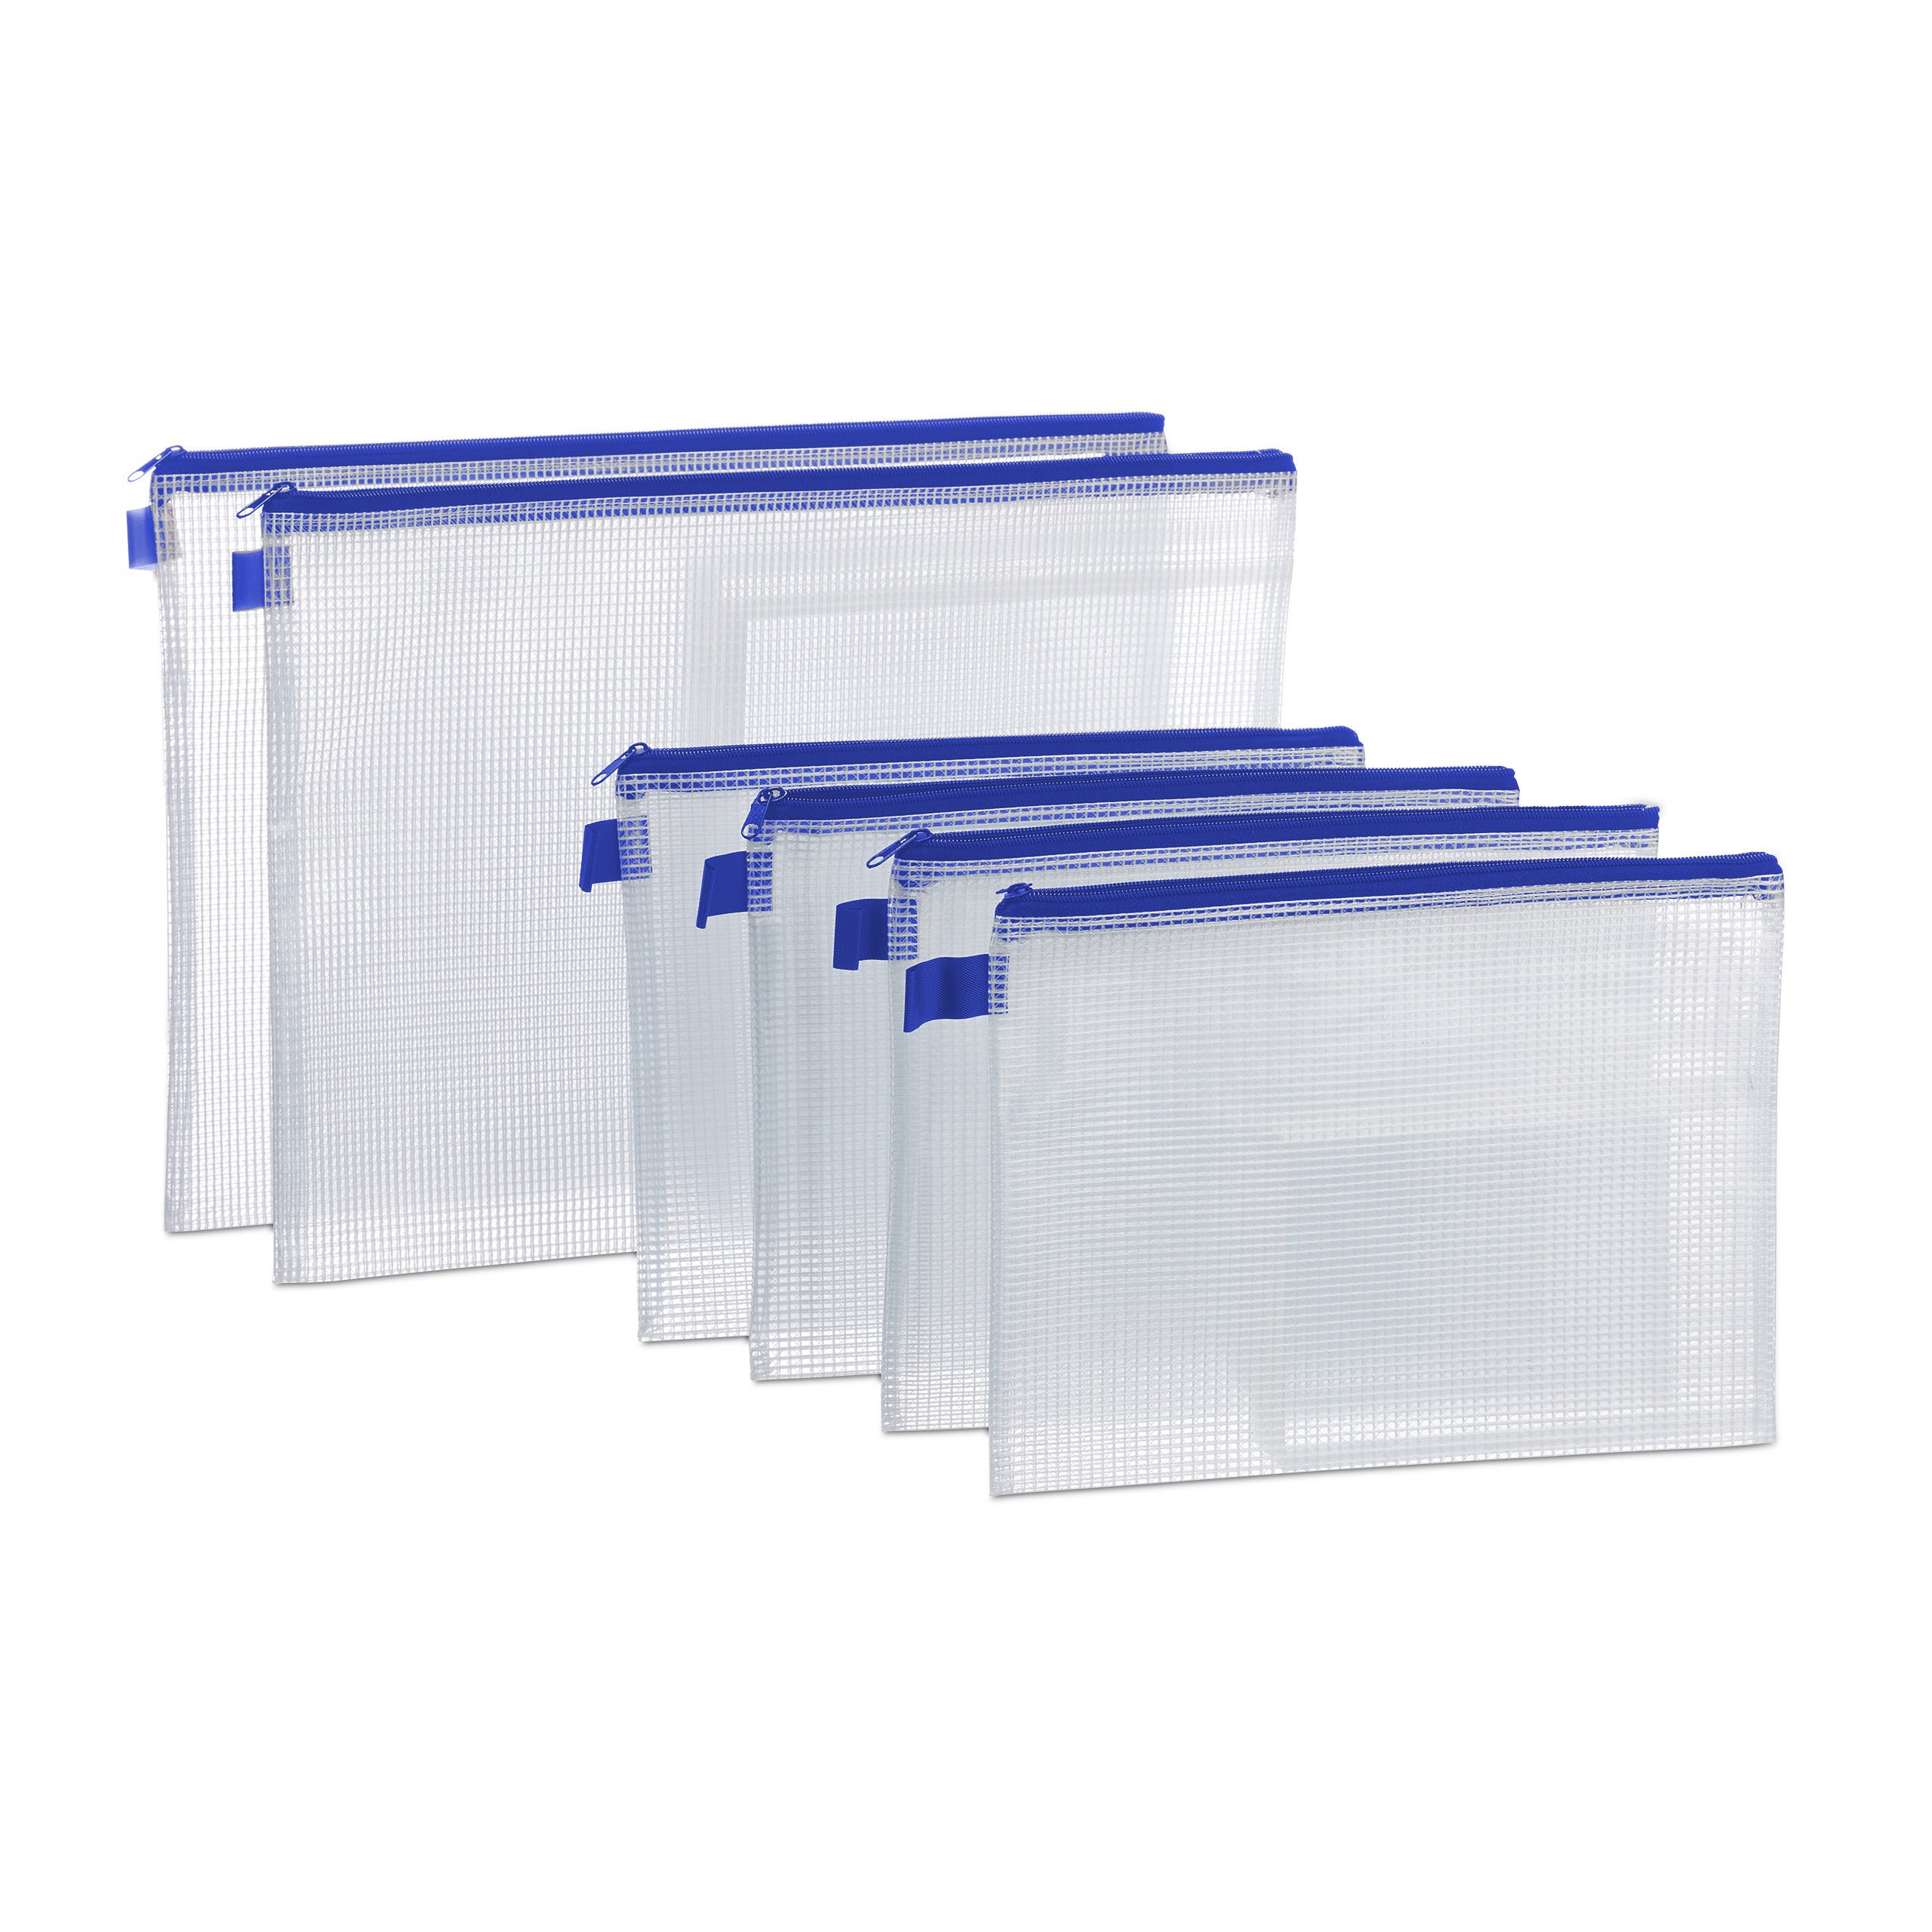 Relaxdays Chemise document transparente pochette fermeture éclaire porte- document bureau A4 A5 6 pièces, bleu